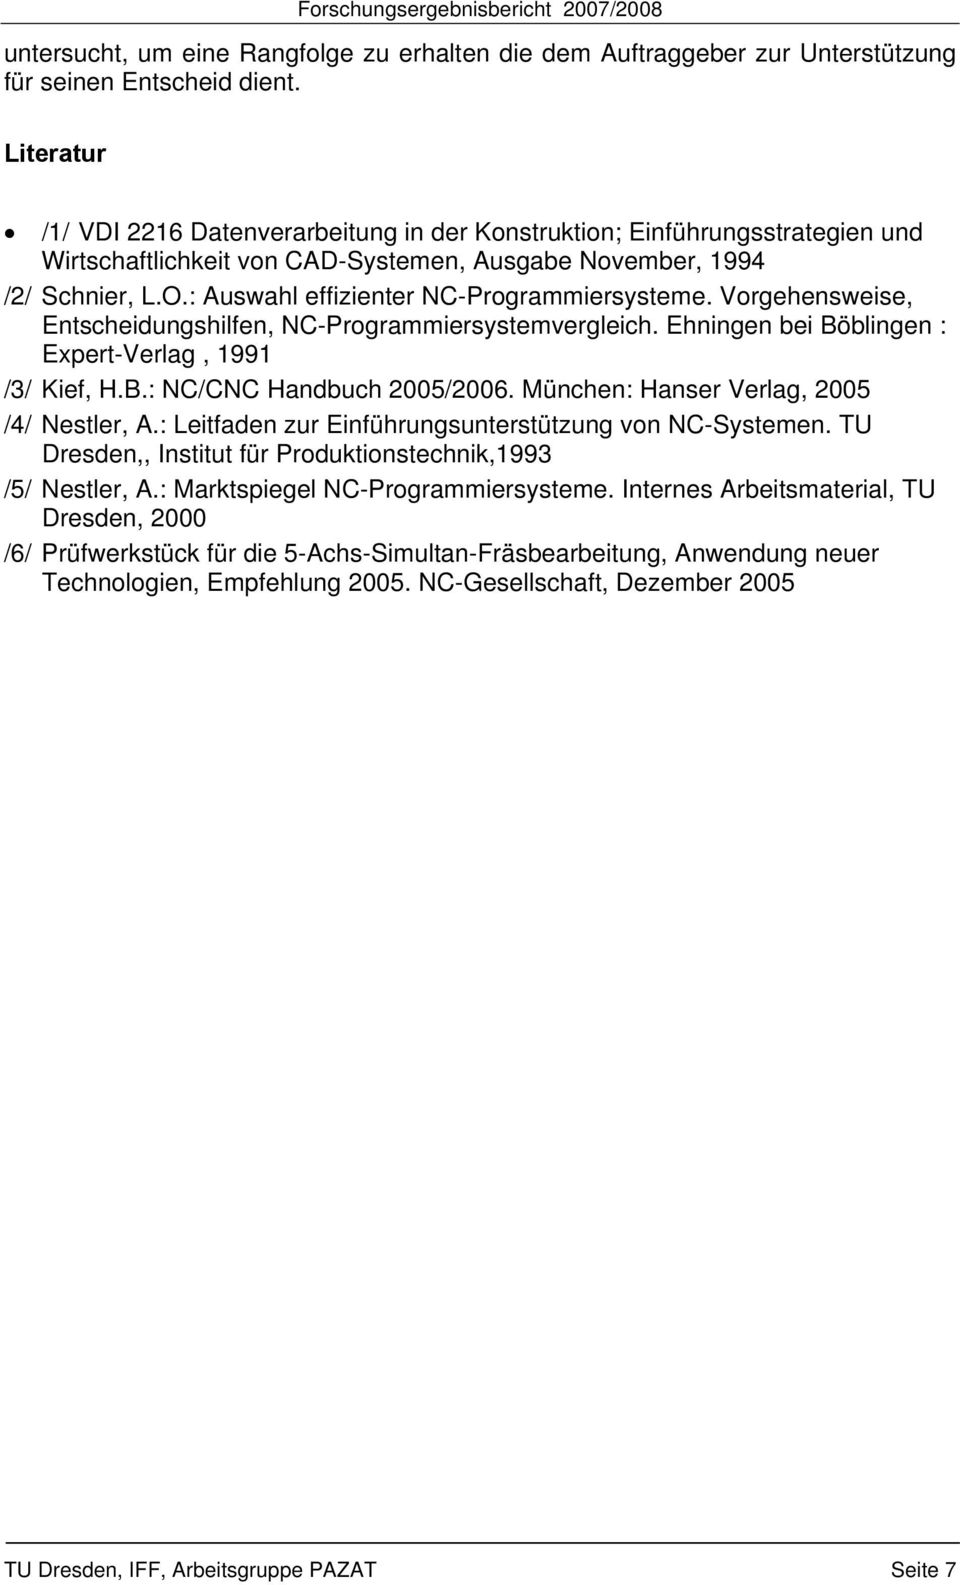 : Auswahl effizienter NC-Programmiersysteme. Vorgehensweise, Entscheidungshilfen, NC-Programmiersystemvergleich. Ehningen bei Böblingen : Expert-Verlag, 1991 /3/ Kief, H.B.: NC/CNC Handbuch 2005/2006.